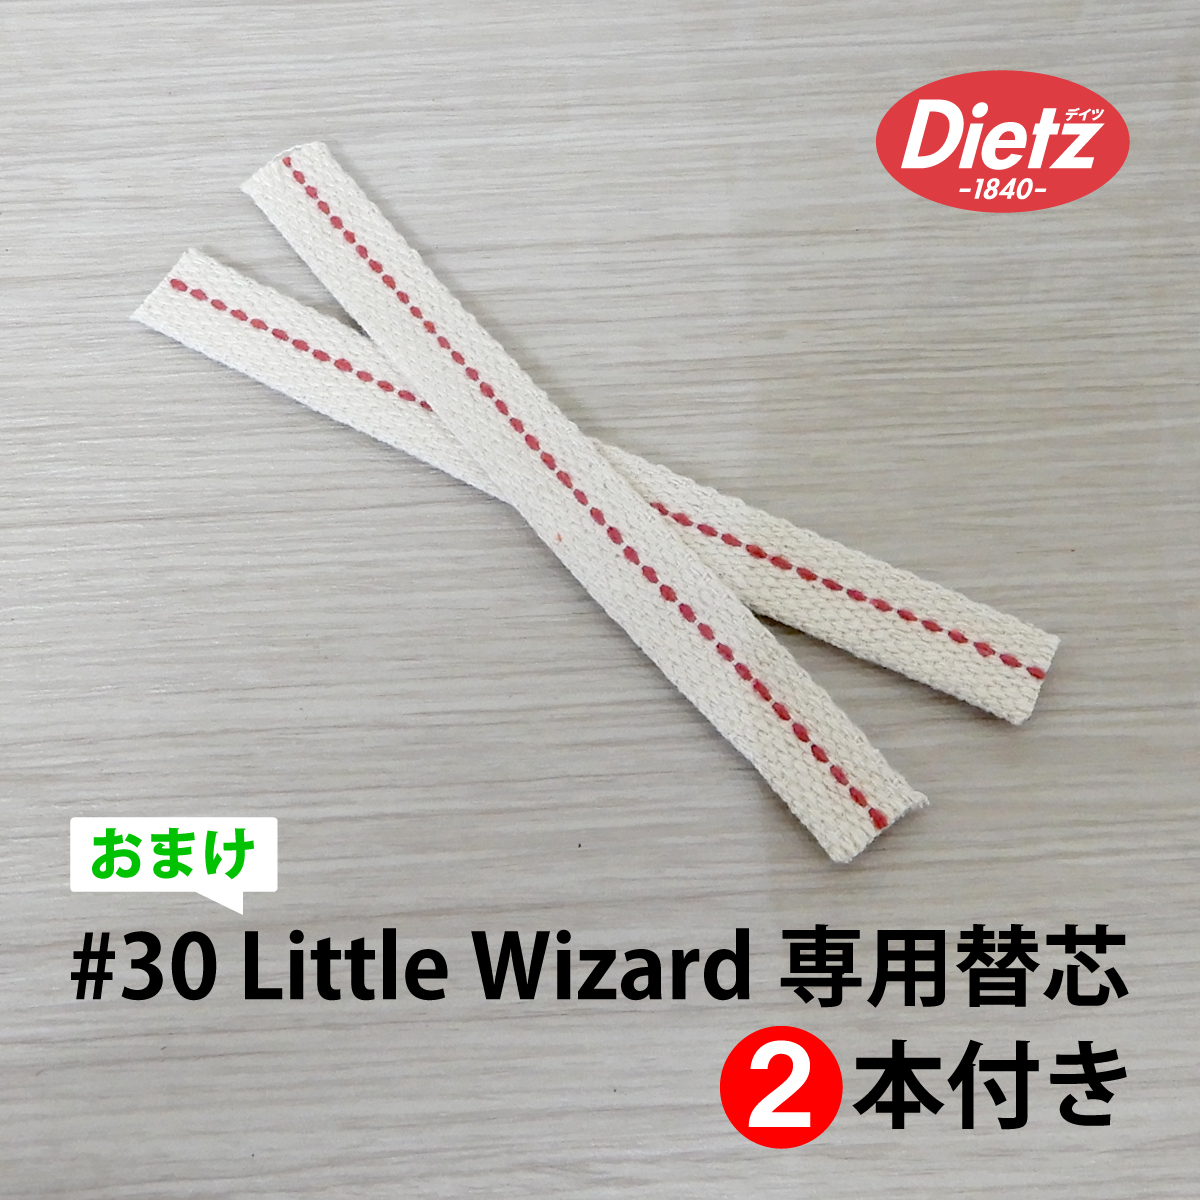 替芯付【送料無料】新品 Dietz #30 Little Wizard Lantern Green Nickel Trim 日本未発売 ◇デイツ  グリーン ニッケル ハリケーンランタン